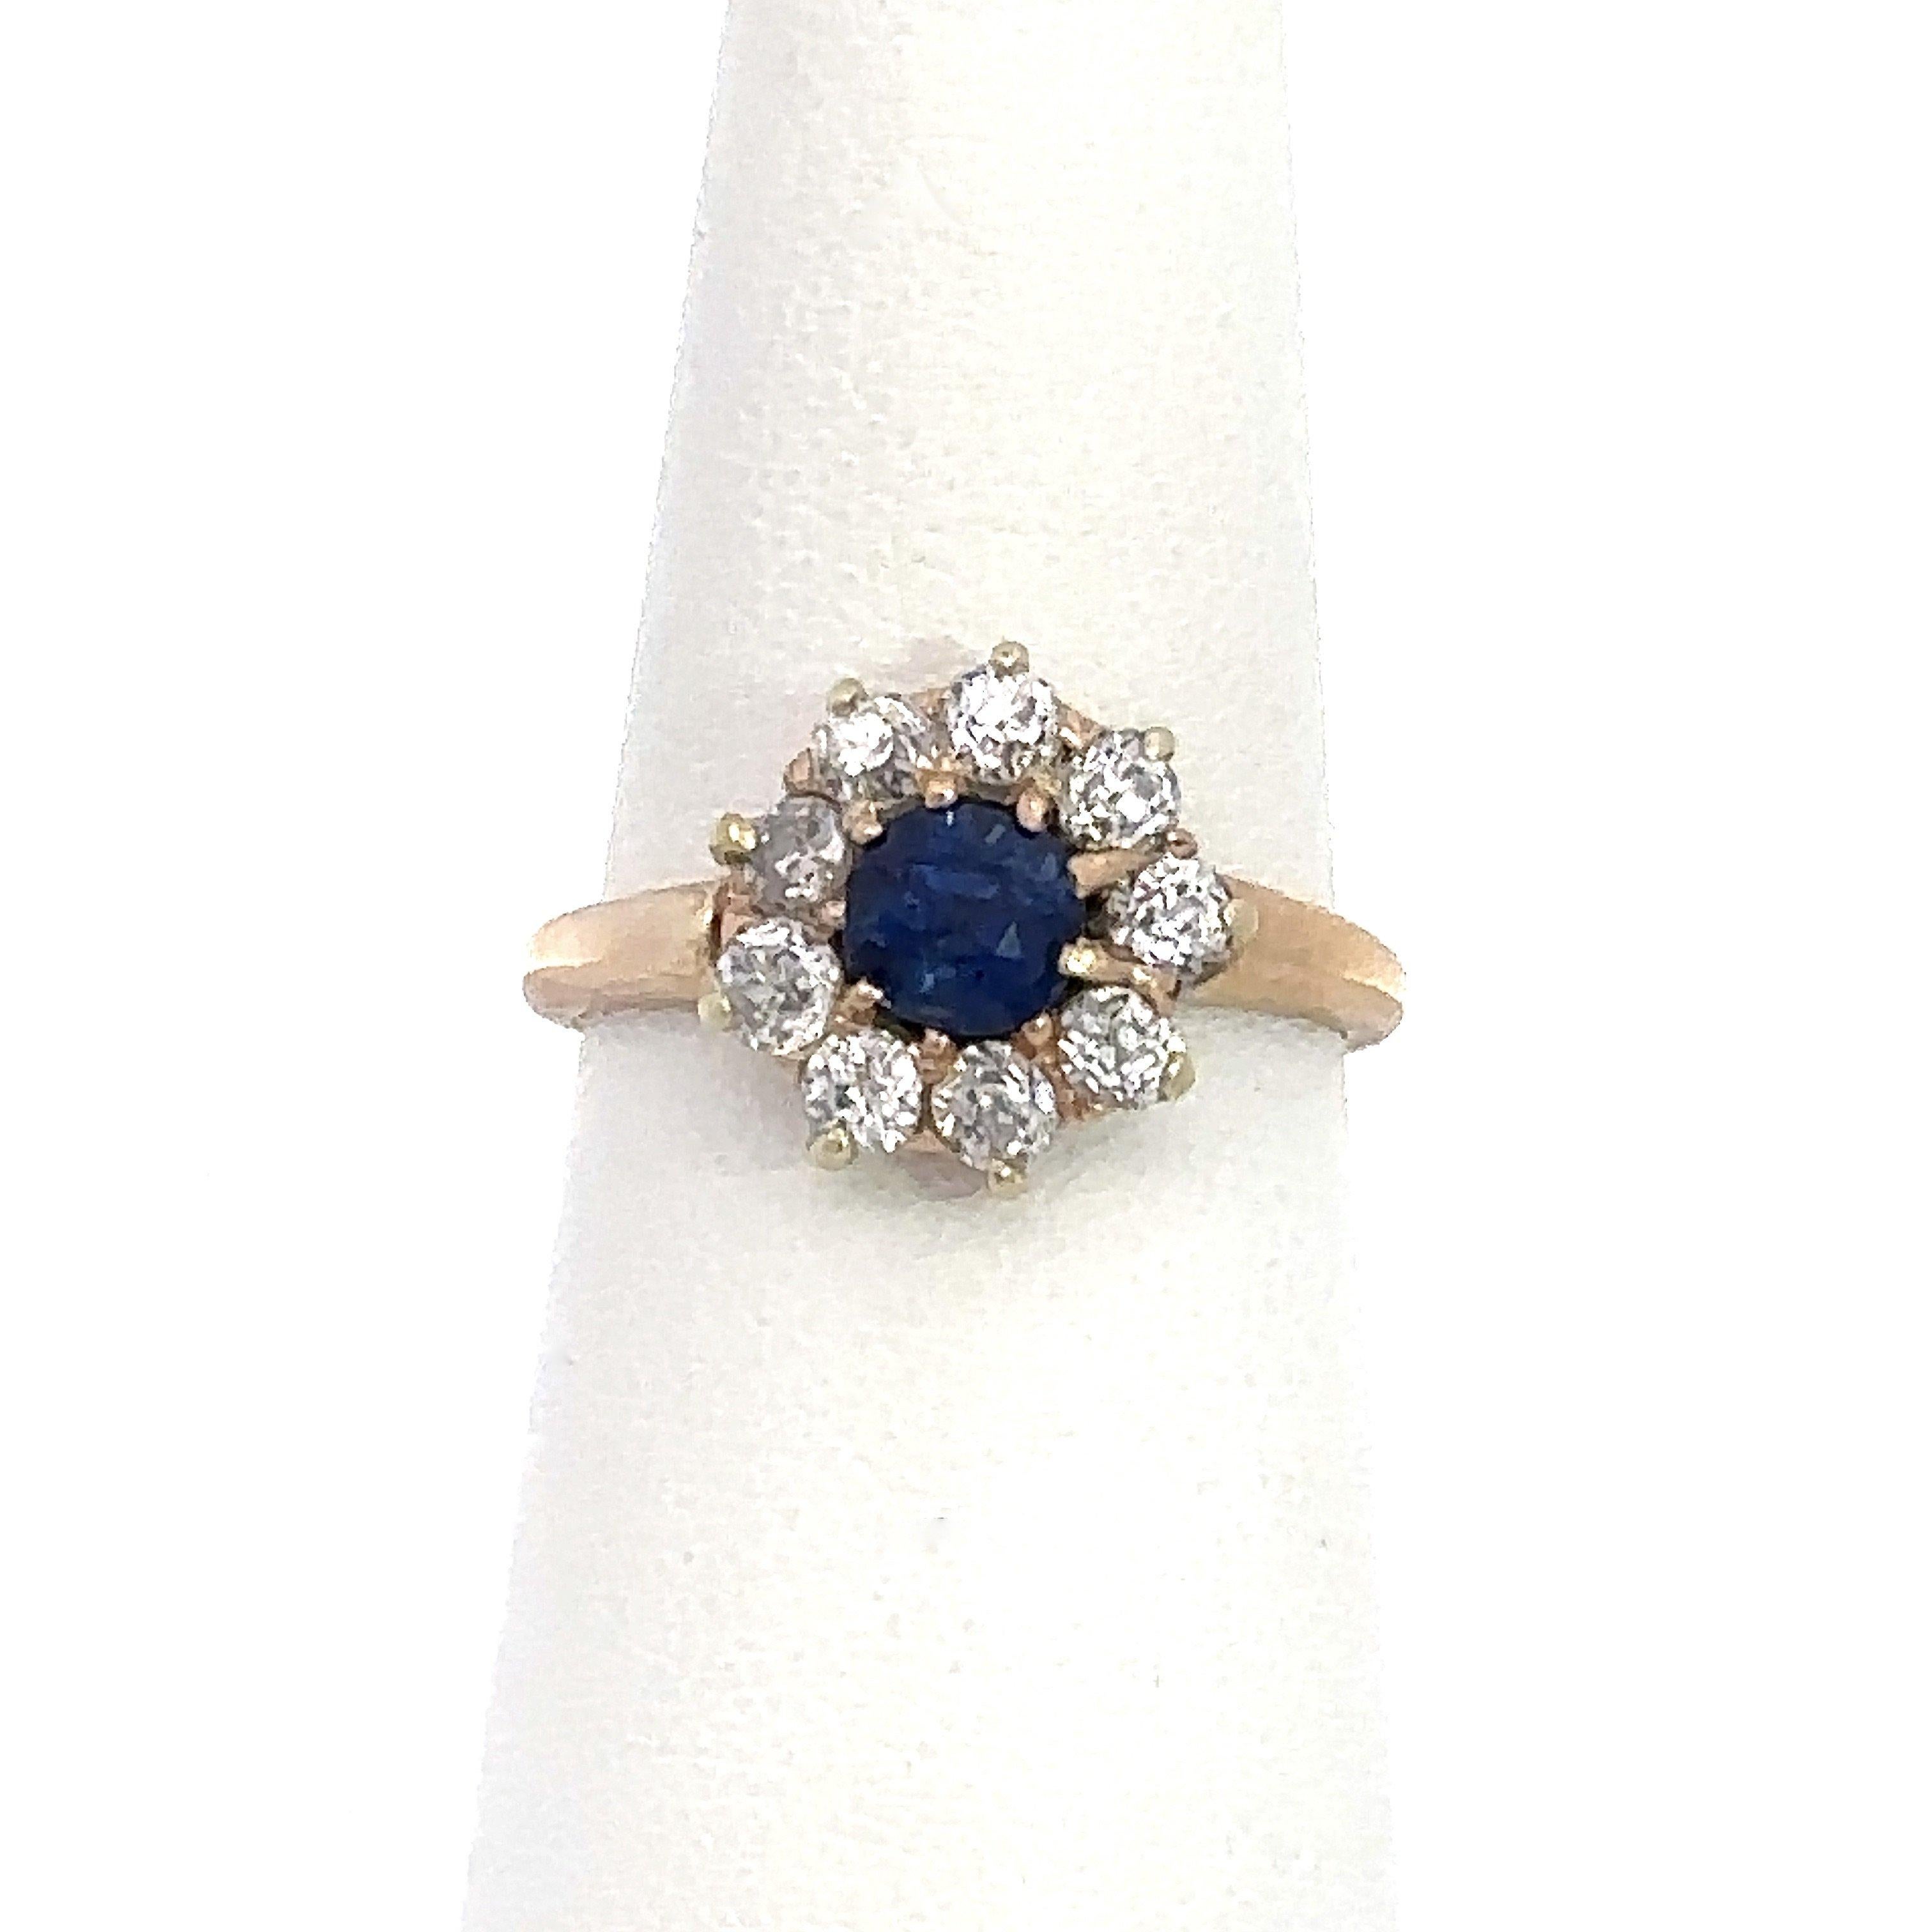 Diese antike Edwardian 14KT Gelbgold-Cluster-Ring stammt aus dem frühen 1900 und verfügt über eine atemberaubende .70ct vibrierenden blauen alten europäischen Schnitt Saphir von etwa 1CT von funkelnden alten europäischen Schnitt Diamanten, G-H